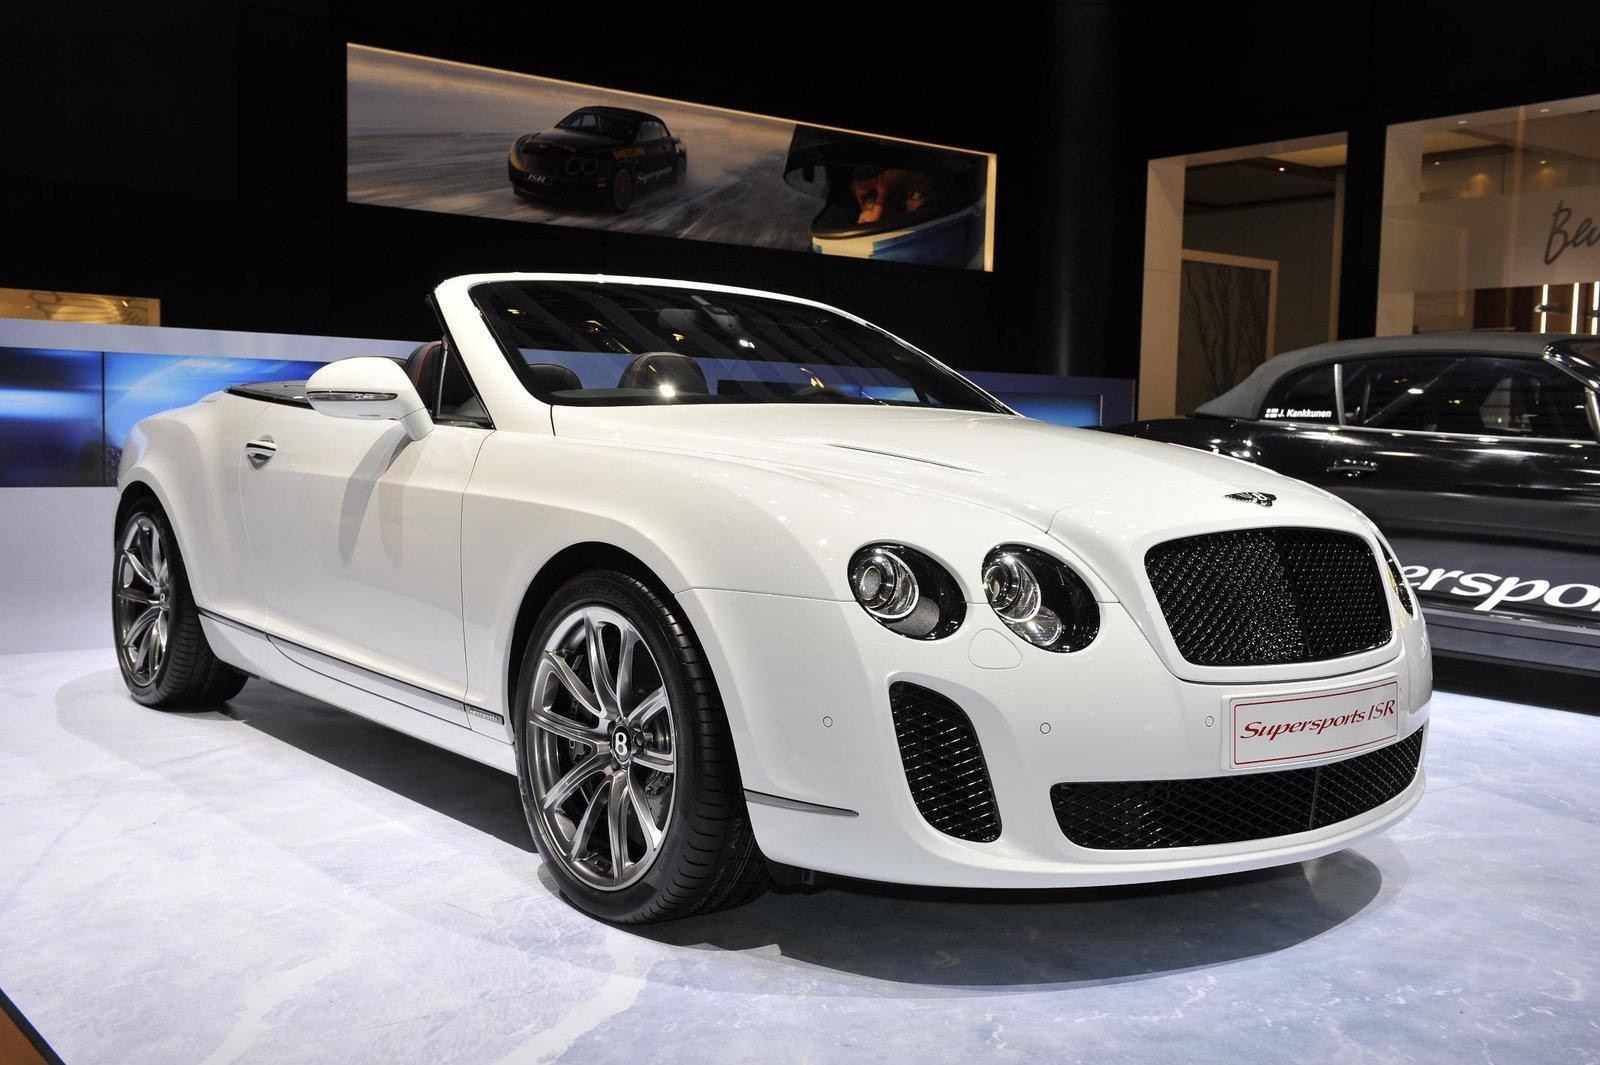 Bentley Supersports ISR Convertible